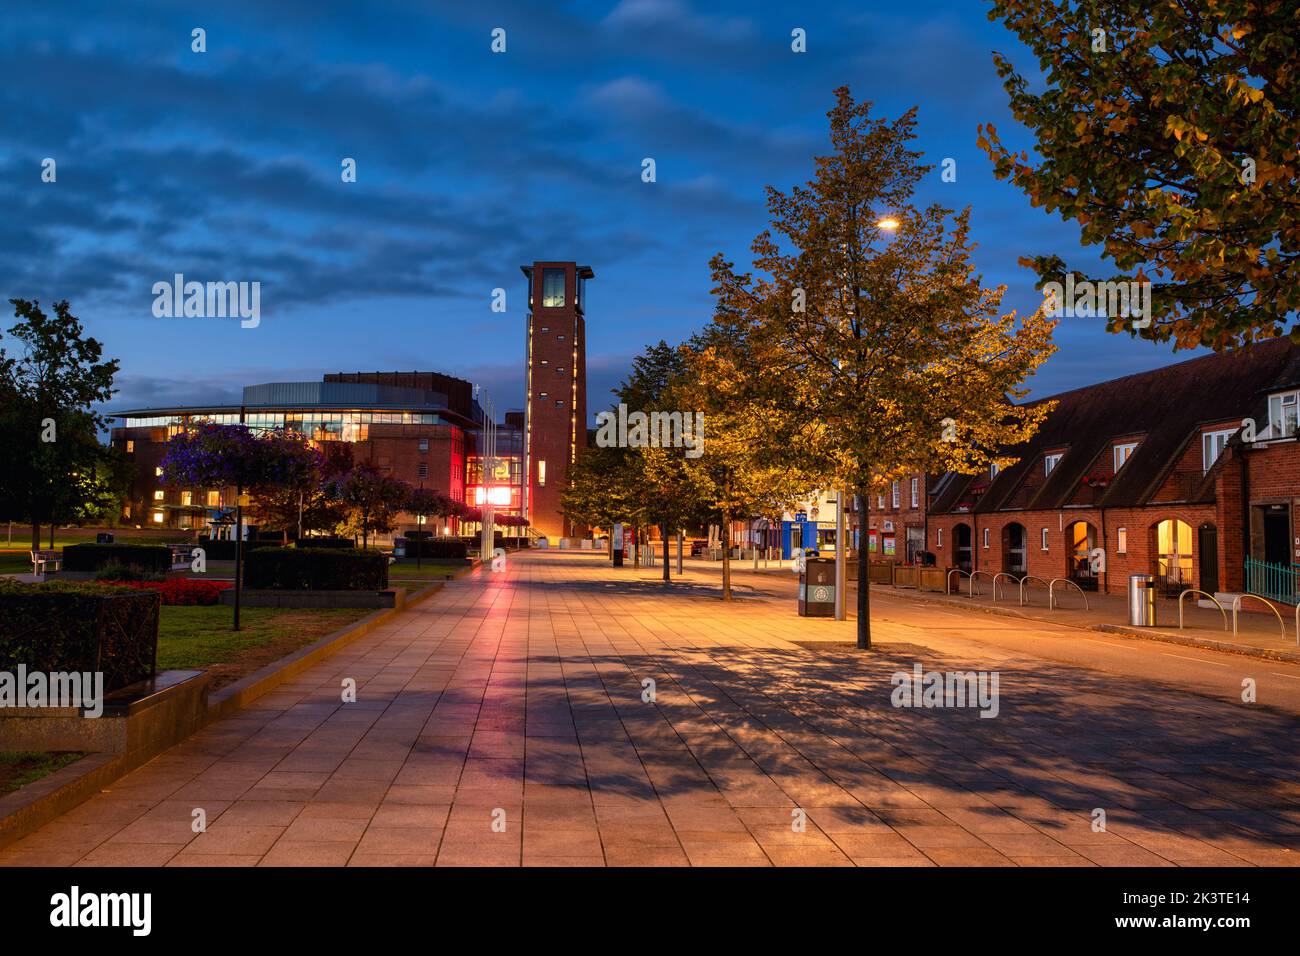 Amanecer de septiembre en Stratford upon Avon, Warwickshire, Inglaterra Foto de stock